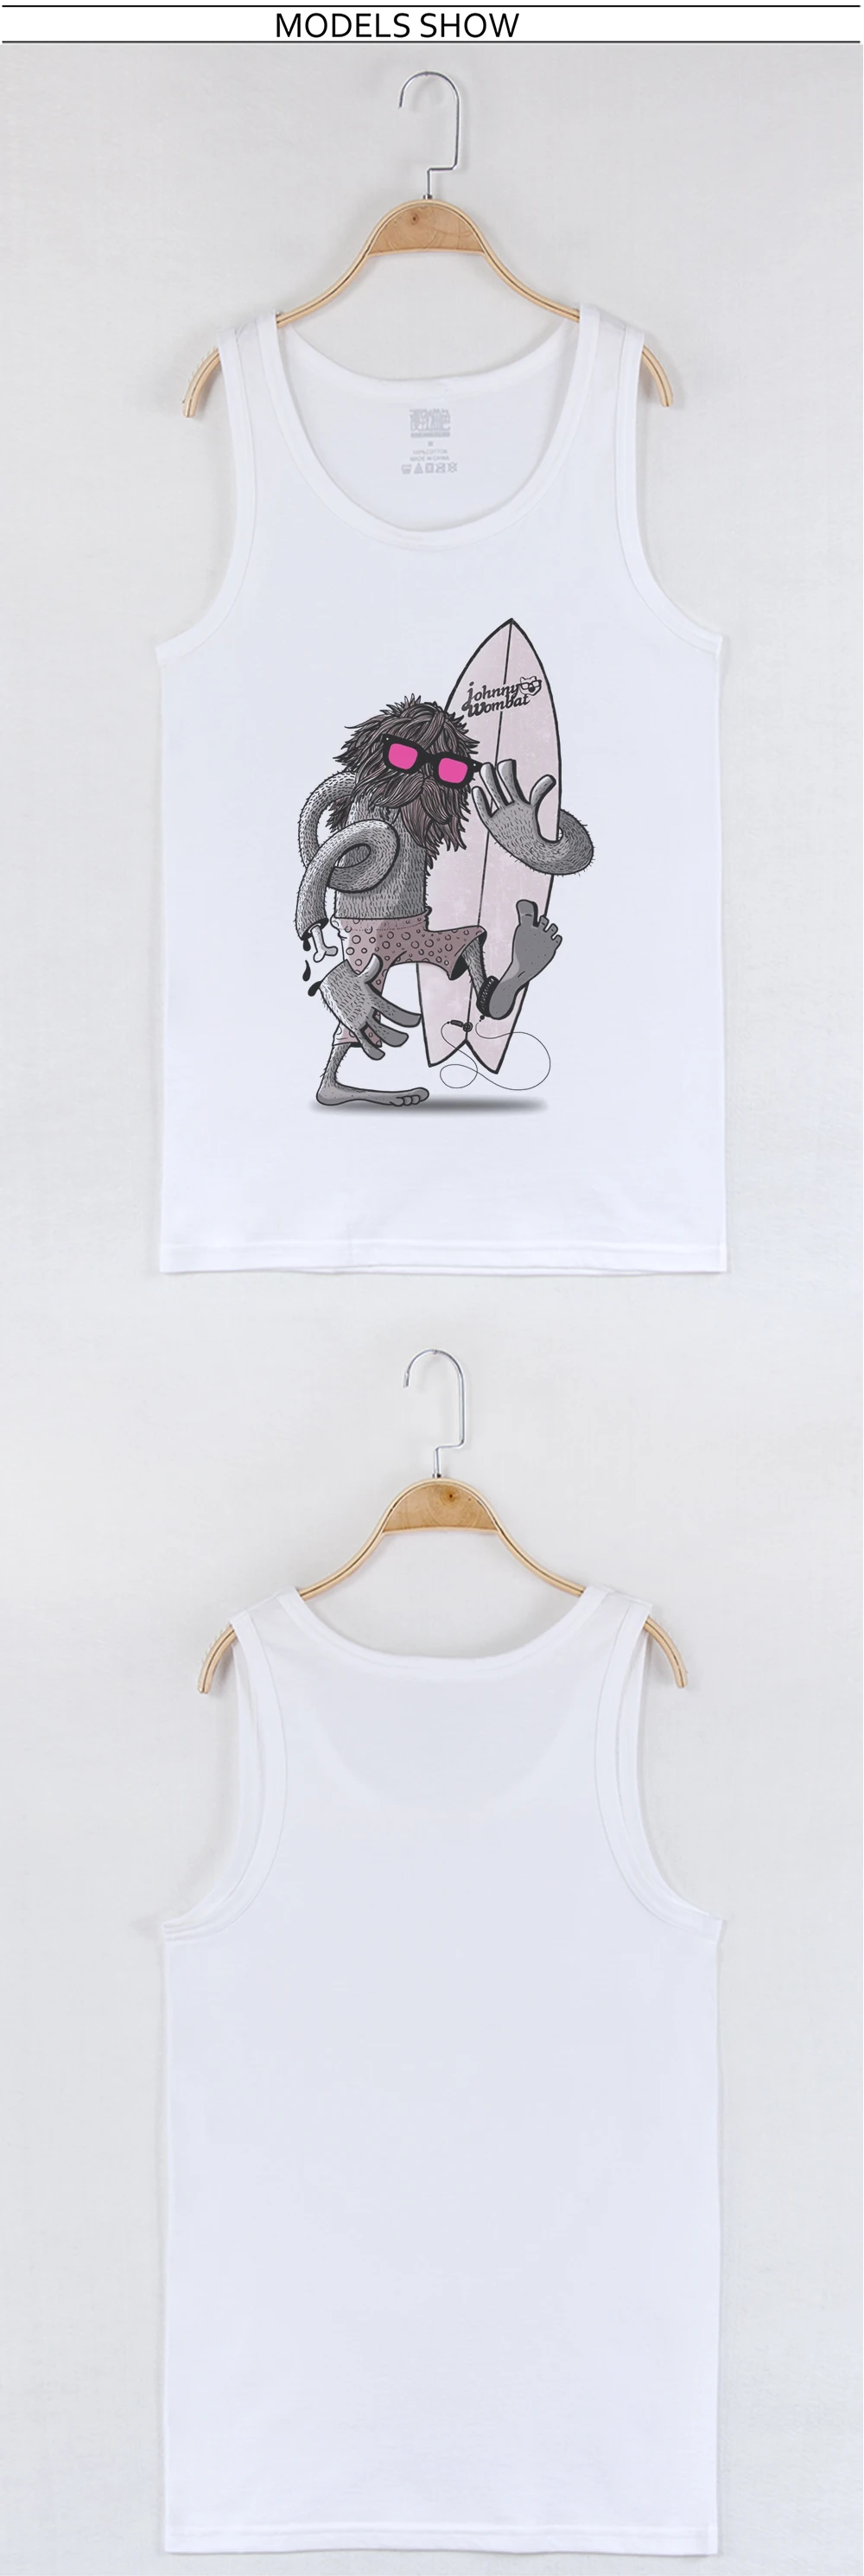 Горячая Распродажа Белый Топ на бретелях мужская майка из хлопка с круглым вырезом модная бодибилдинг с принтом монстра Camiseta tirantes Hombre Gym